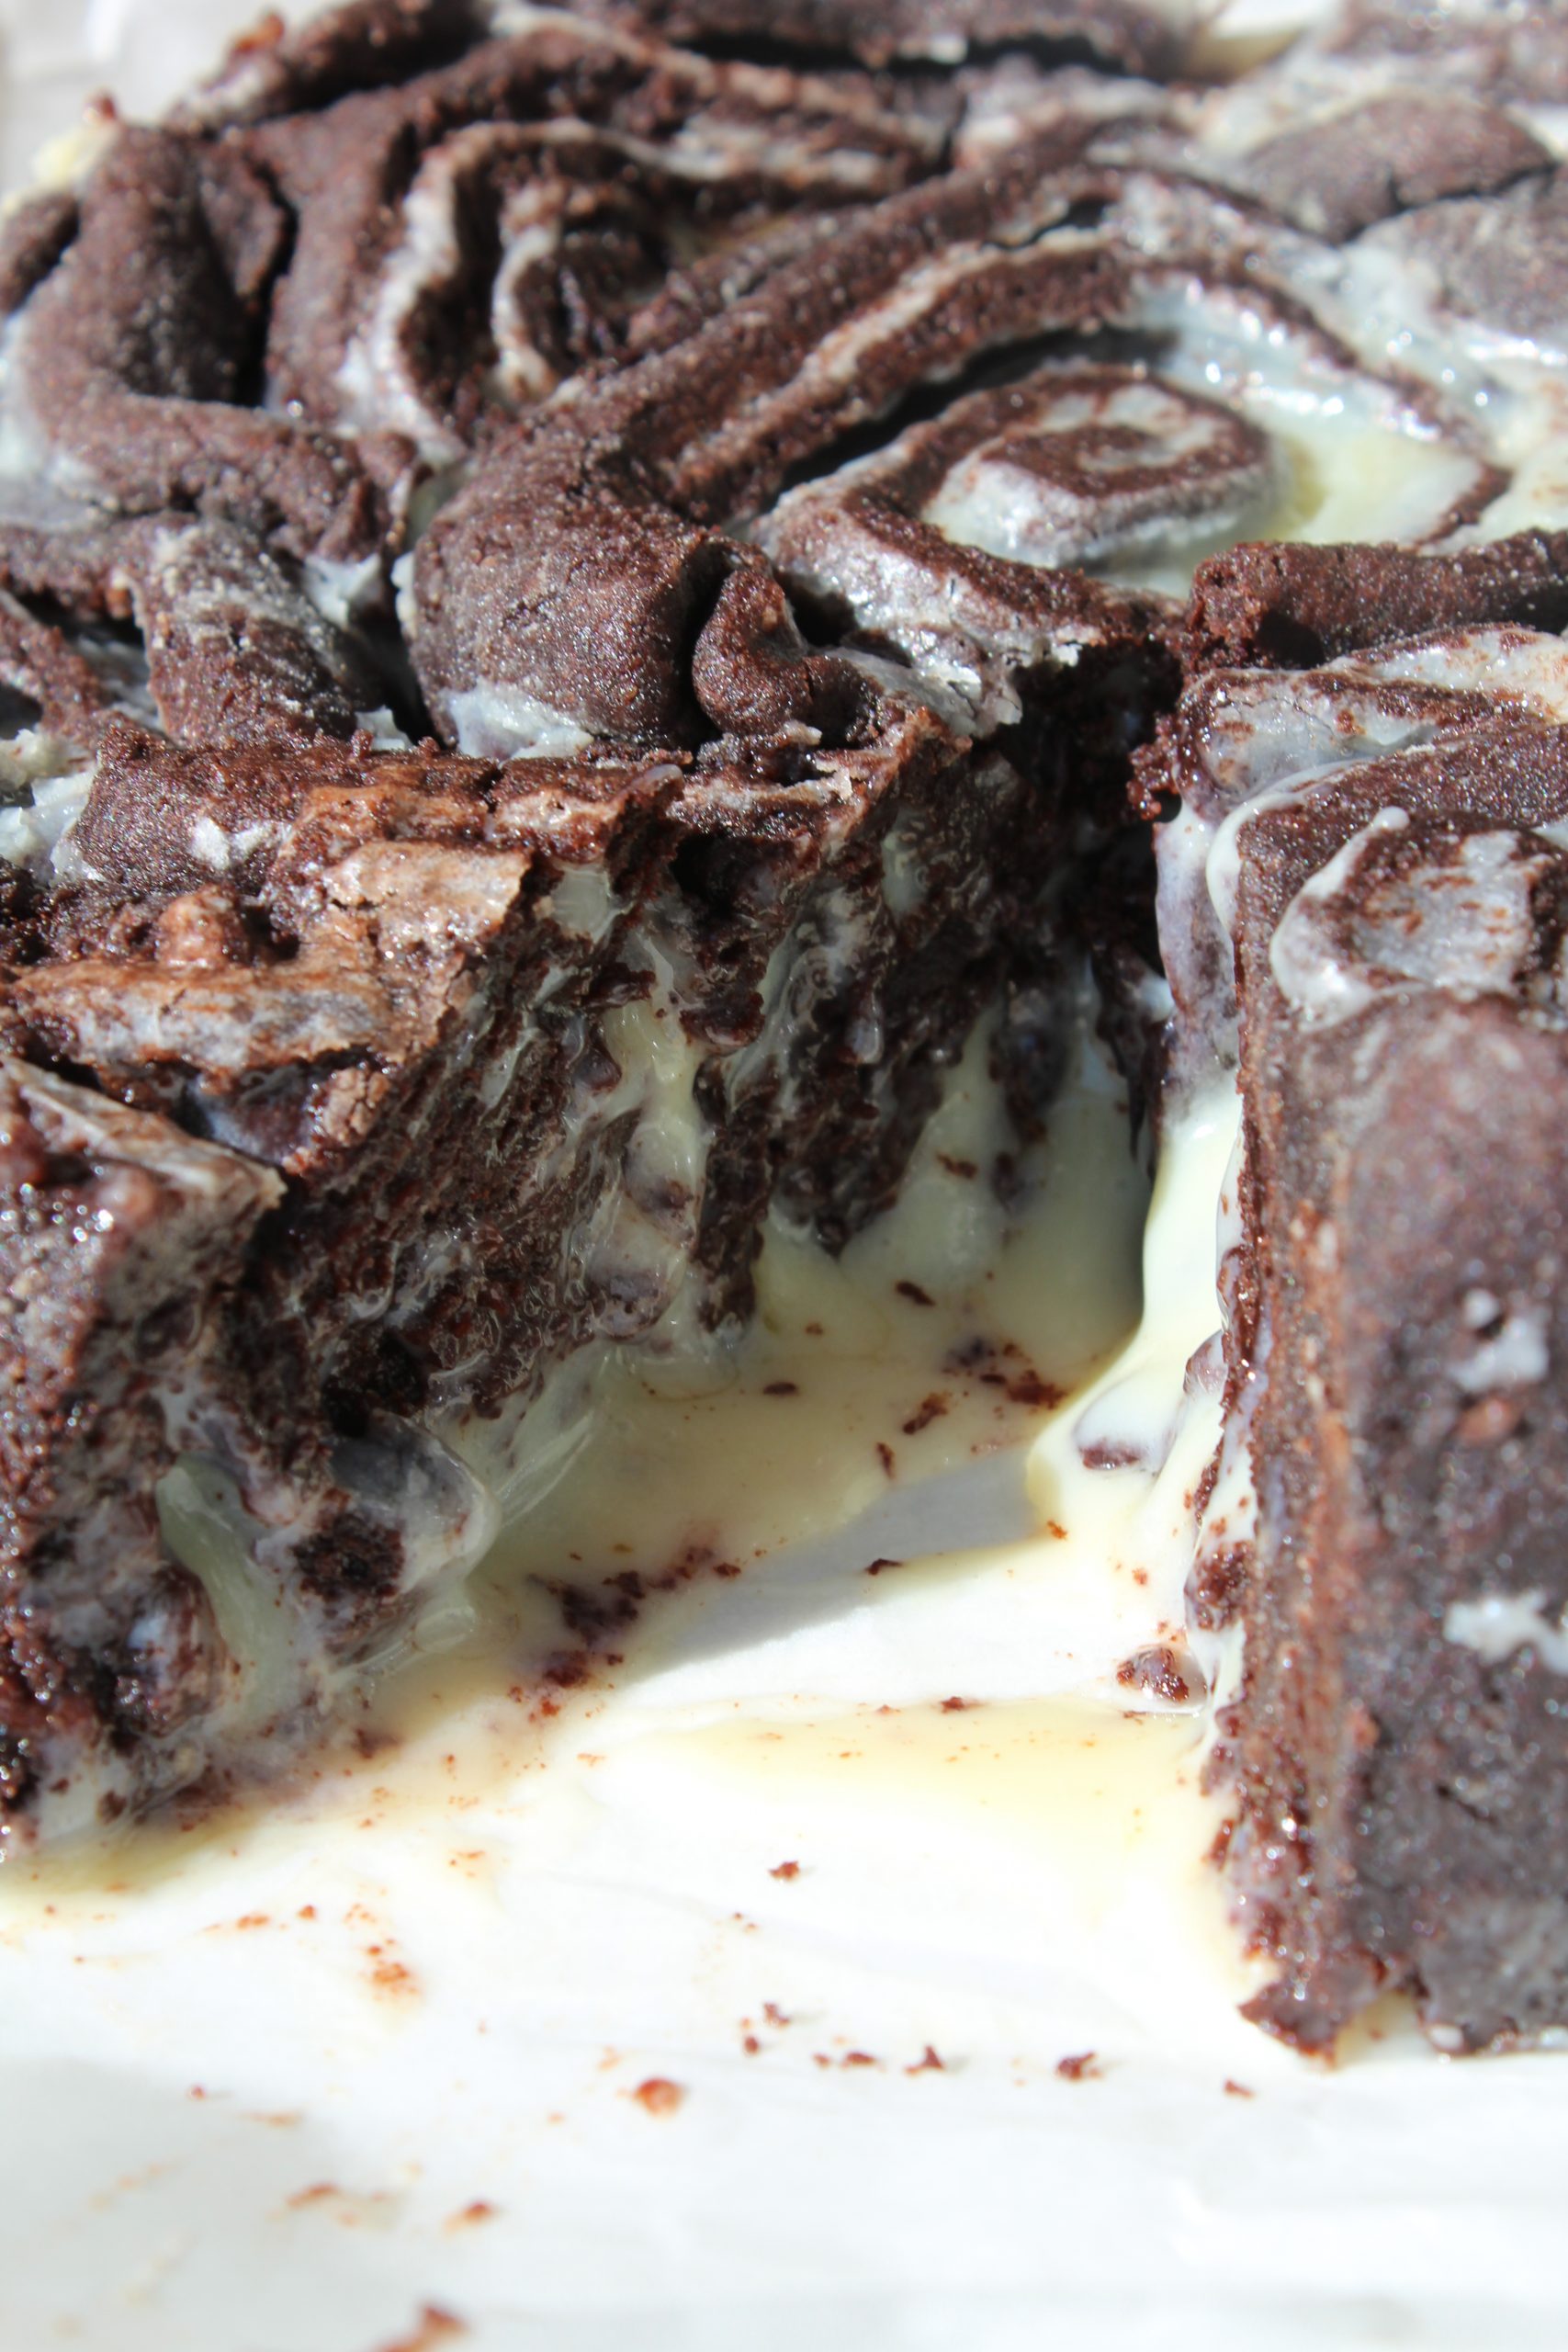 מתכון לעוגת עוגיות שושנים בצק שוקולד קקאו במילוי גנאש שוקולד לבן (עוגת עוגיות אמסטרדם)